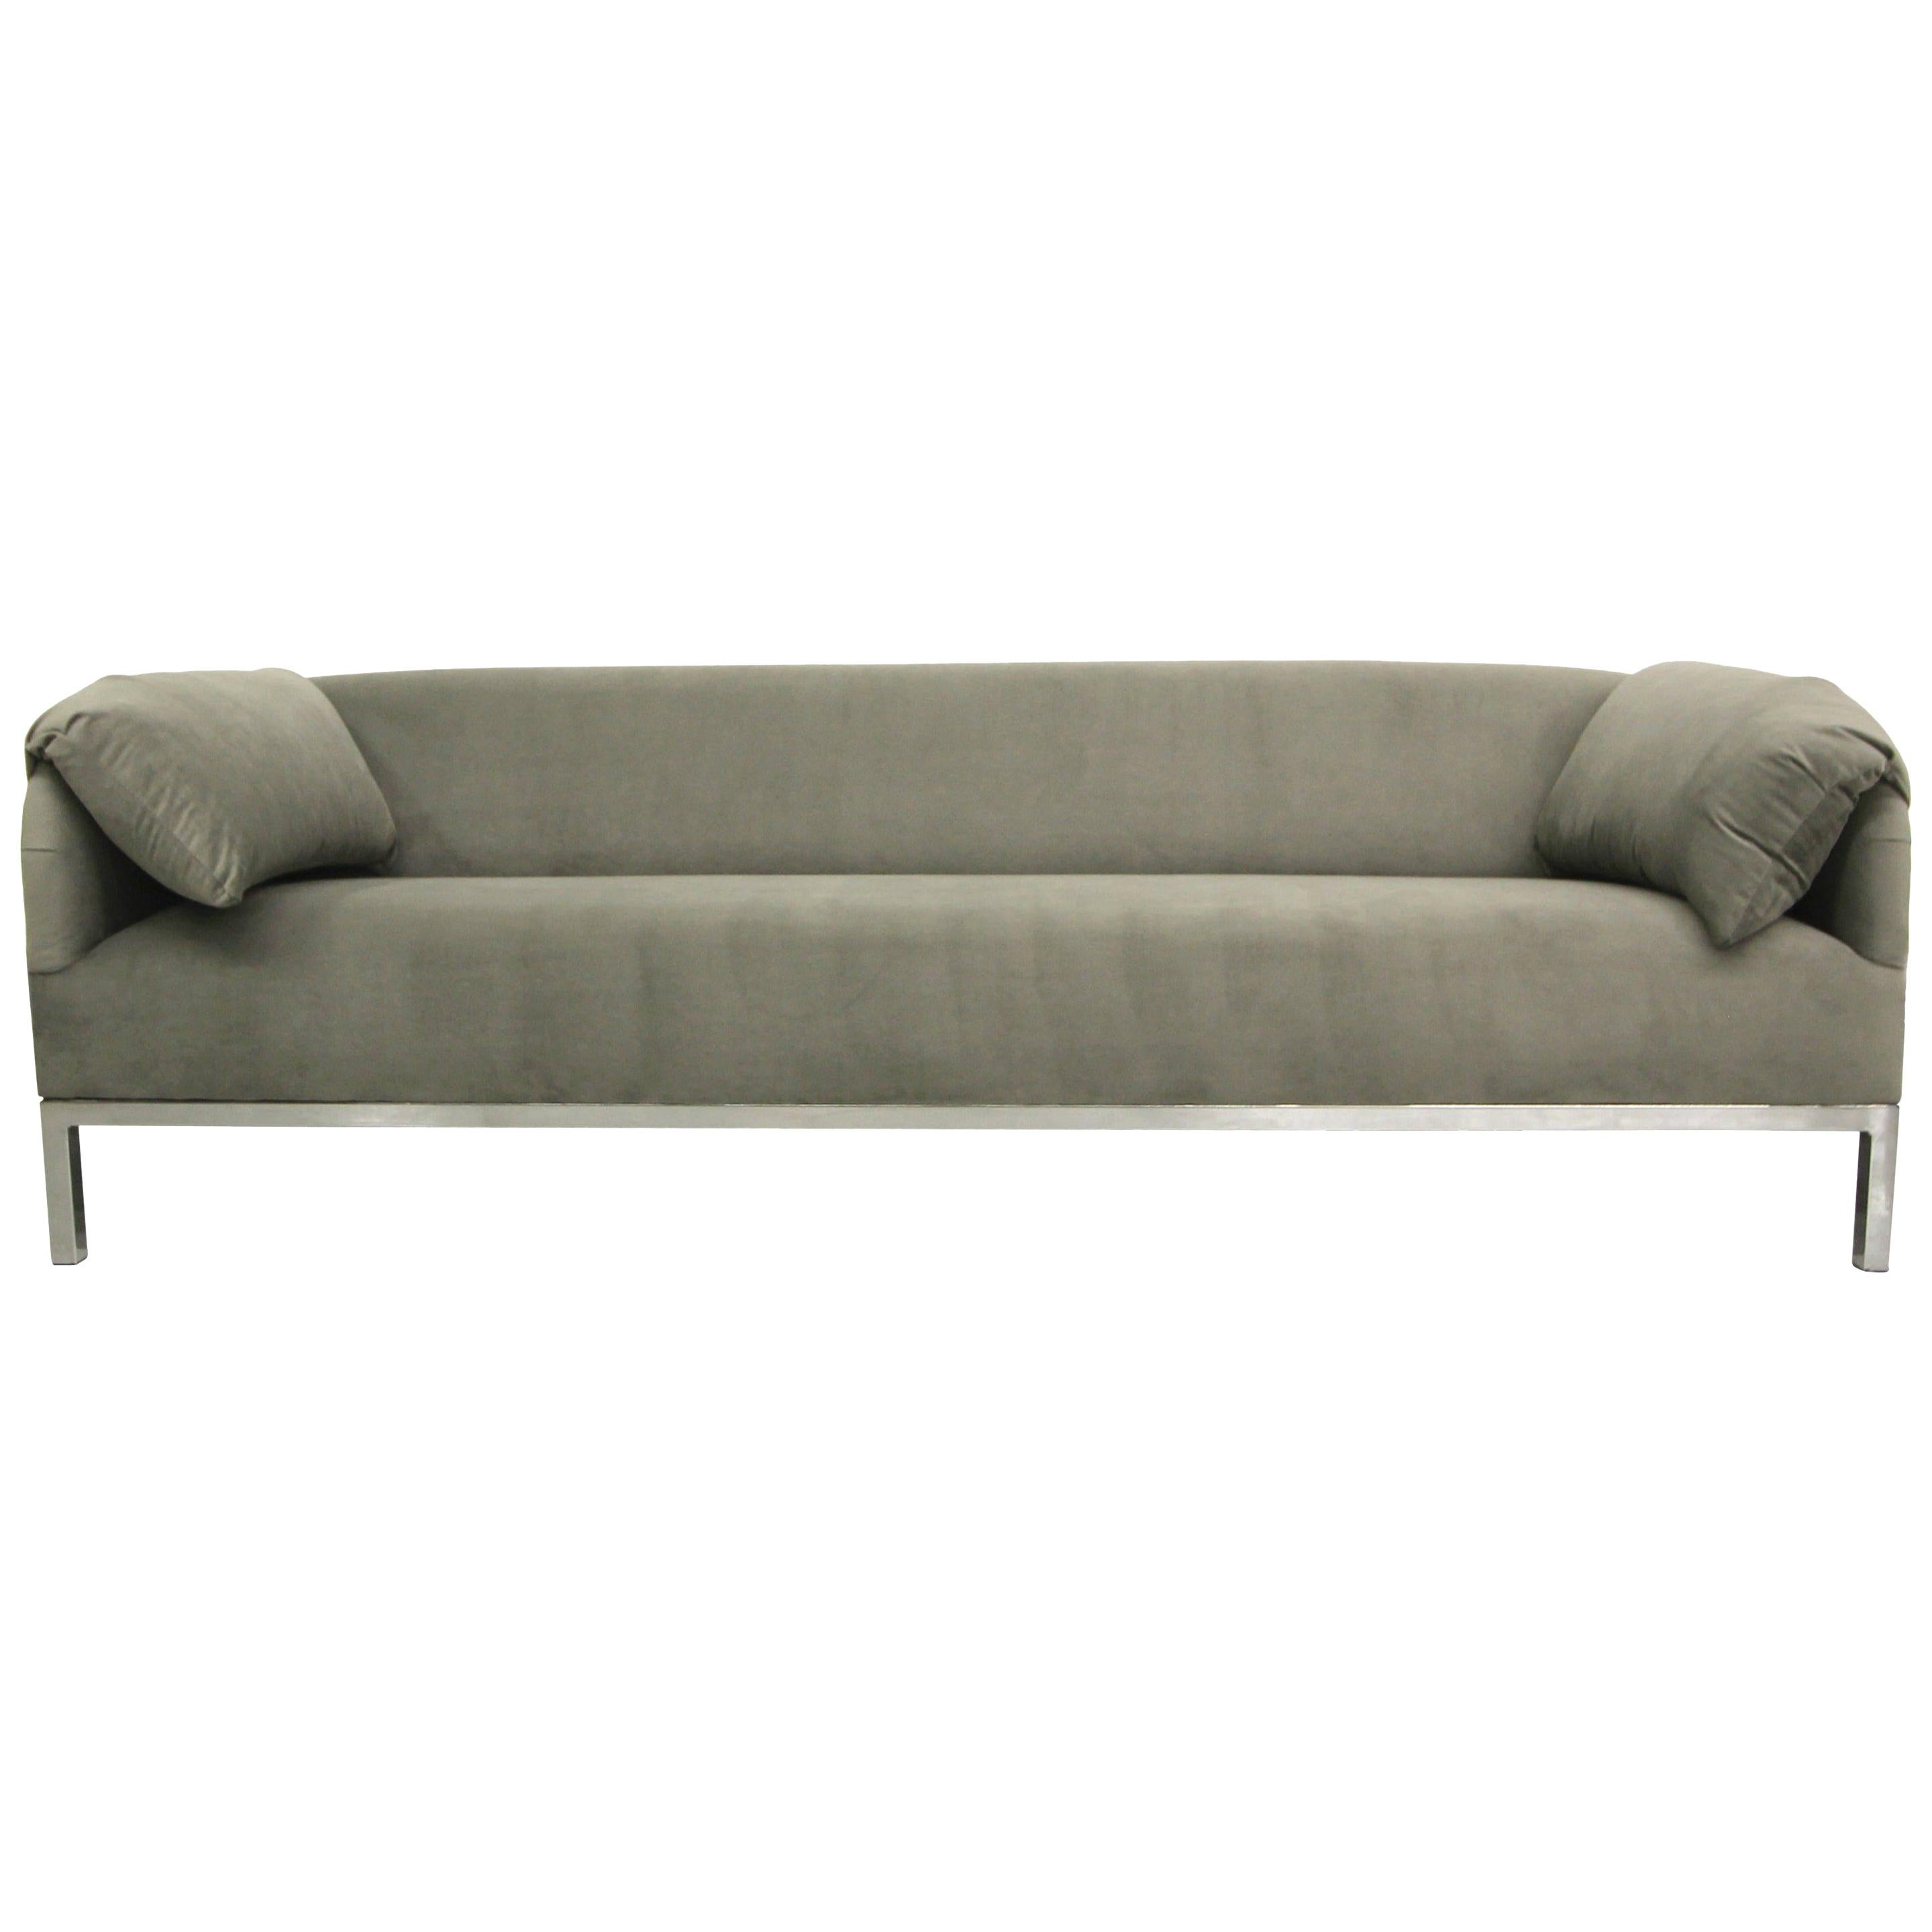 Midcentury Sofa with Chrome Base